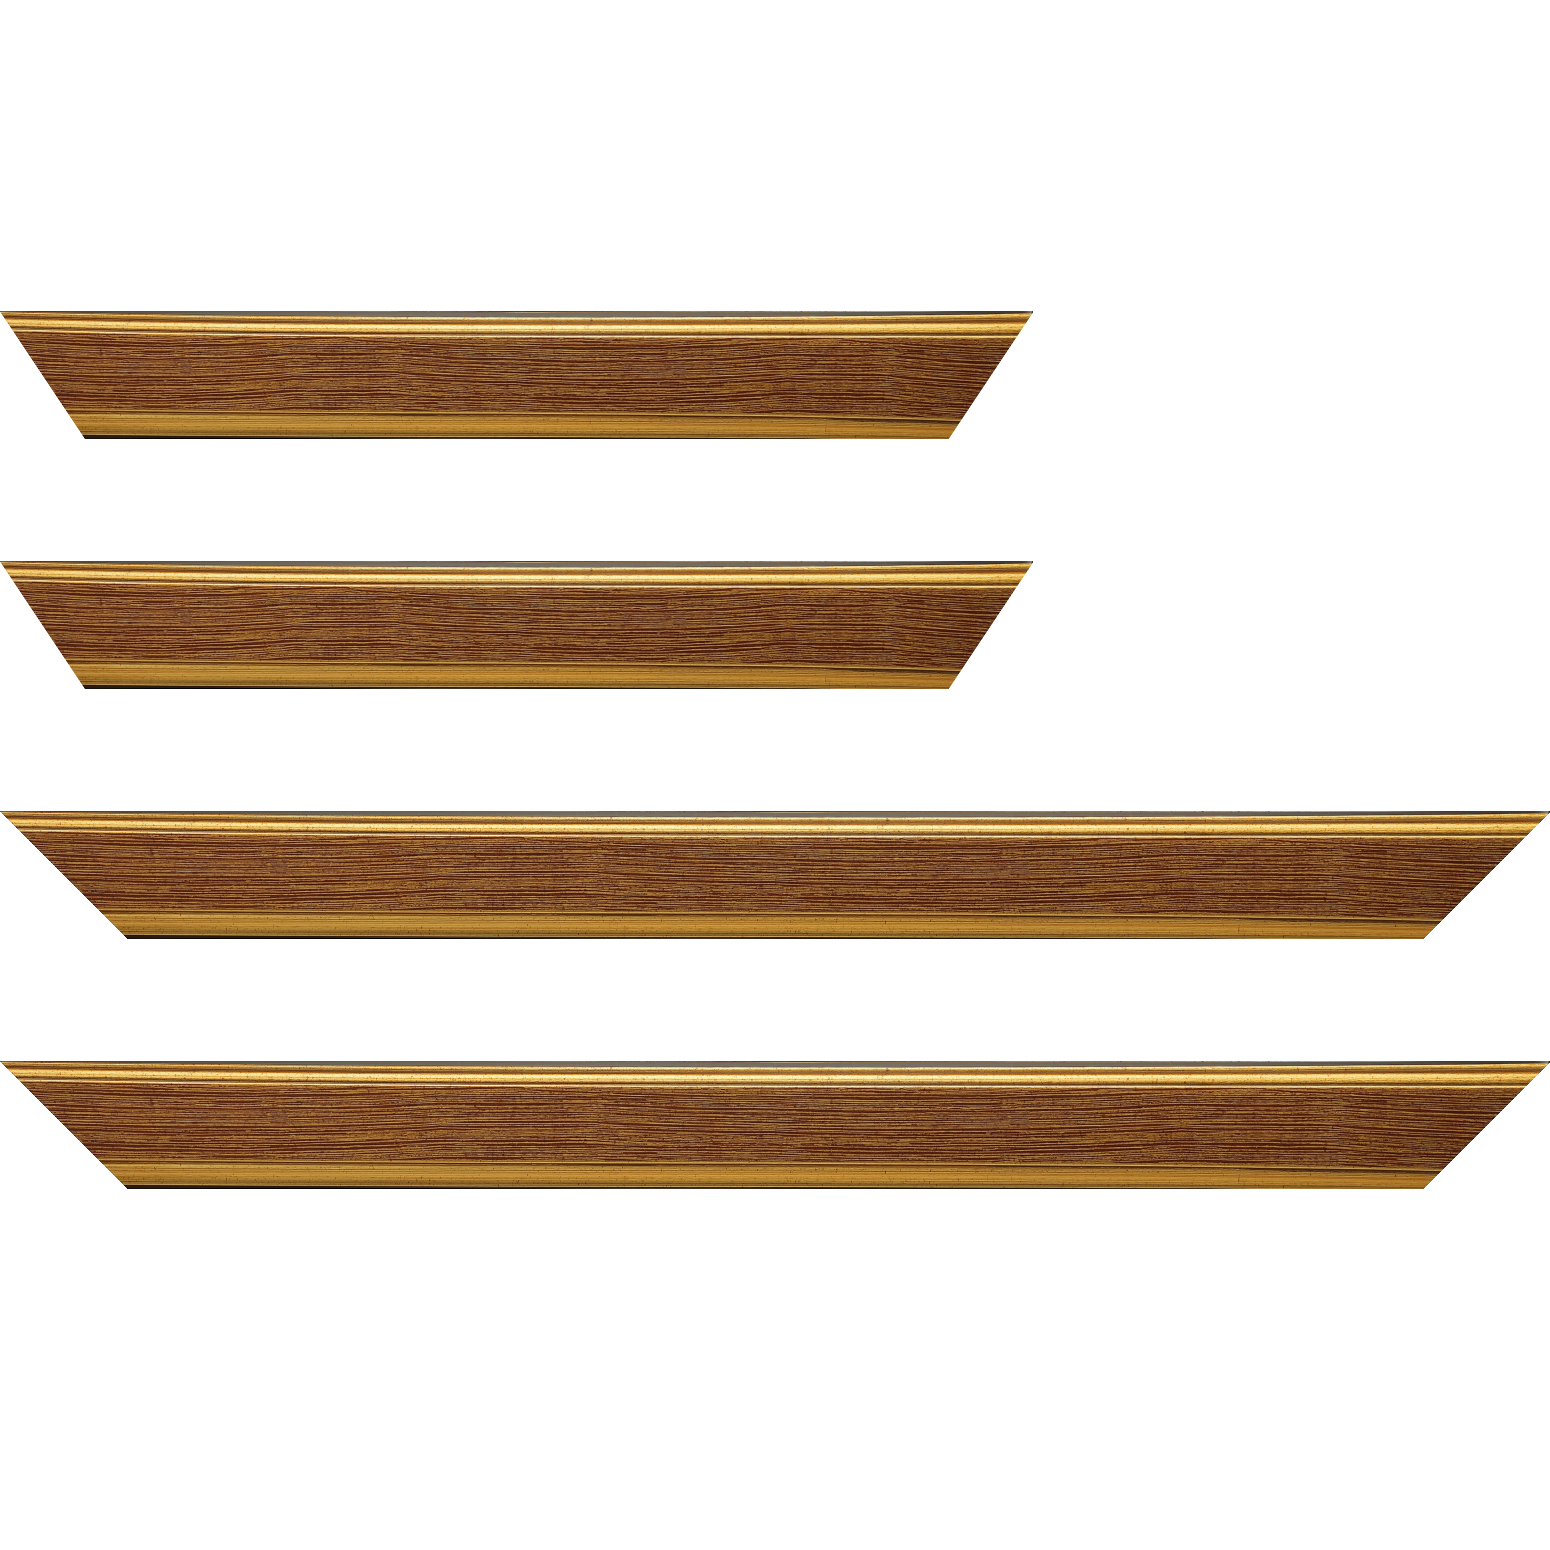 Baguette bois profil plat largeur 3.5cm couleur or fond bordeaux filet or - 40x60